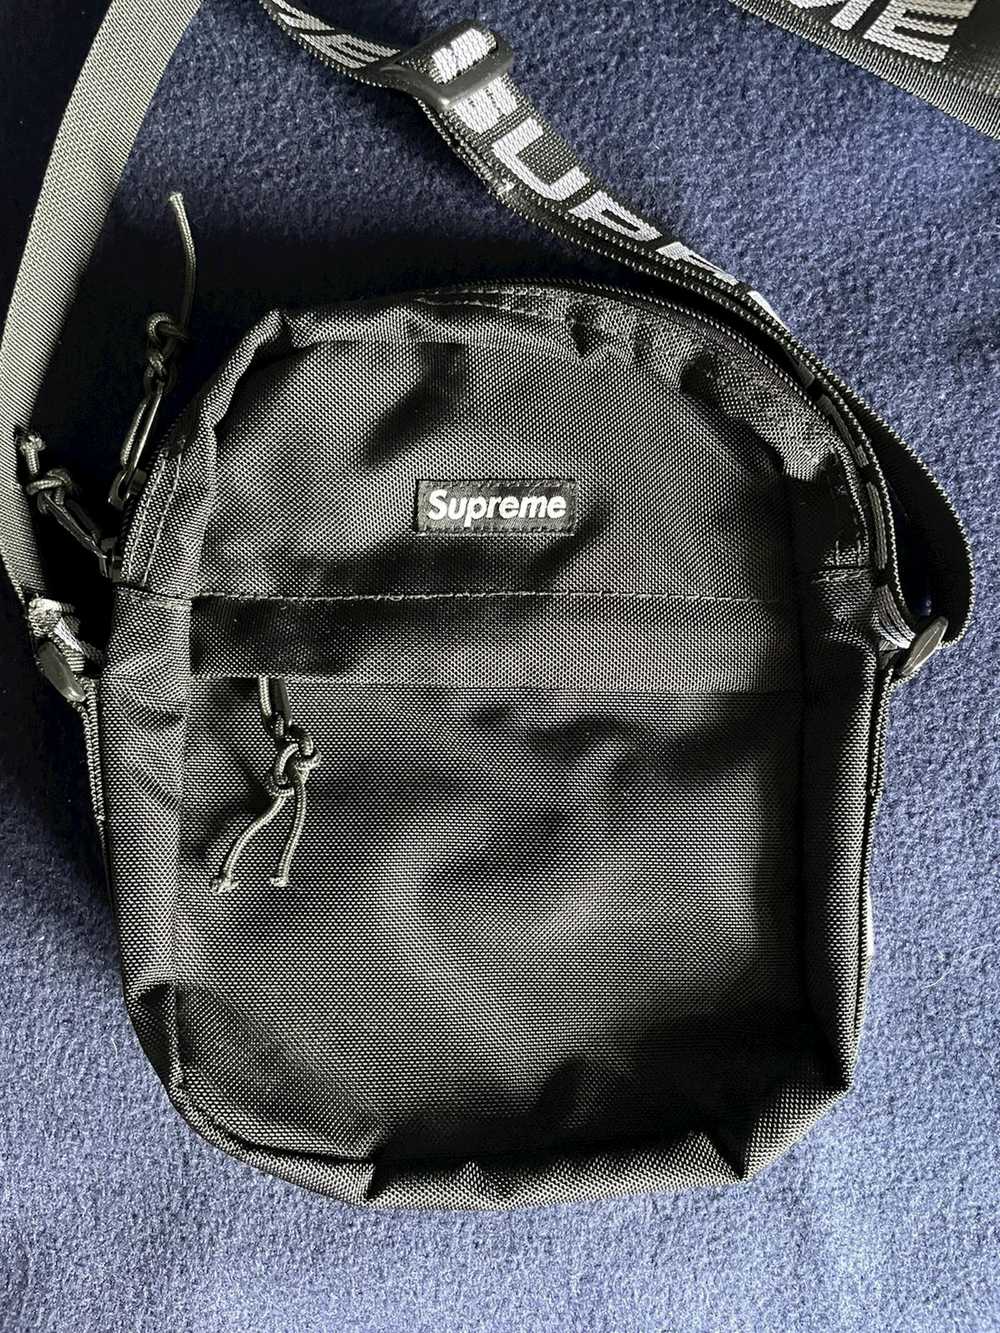 Supreme Supreme Shoulder Bag Black SS18 2018 - image 2